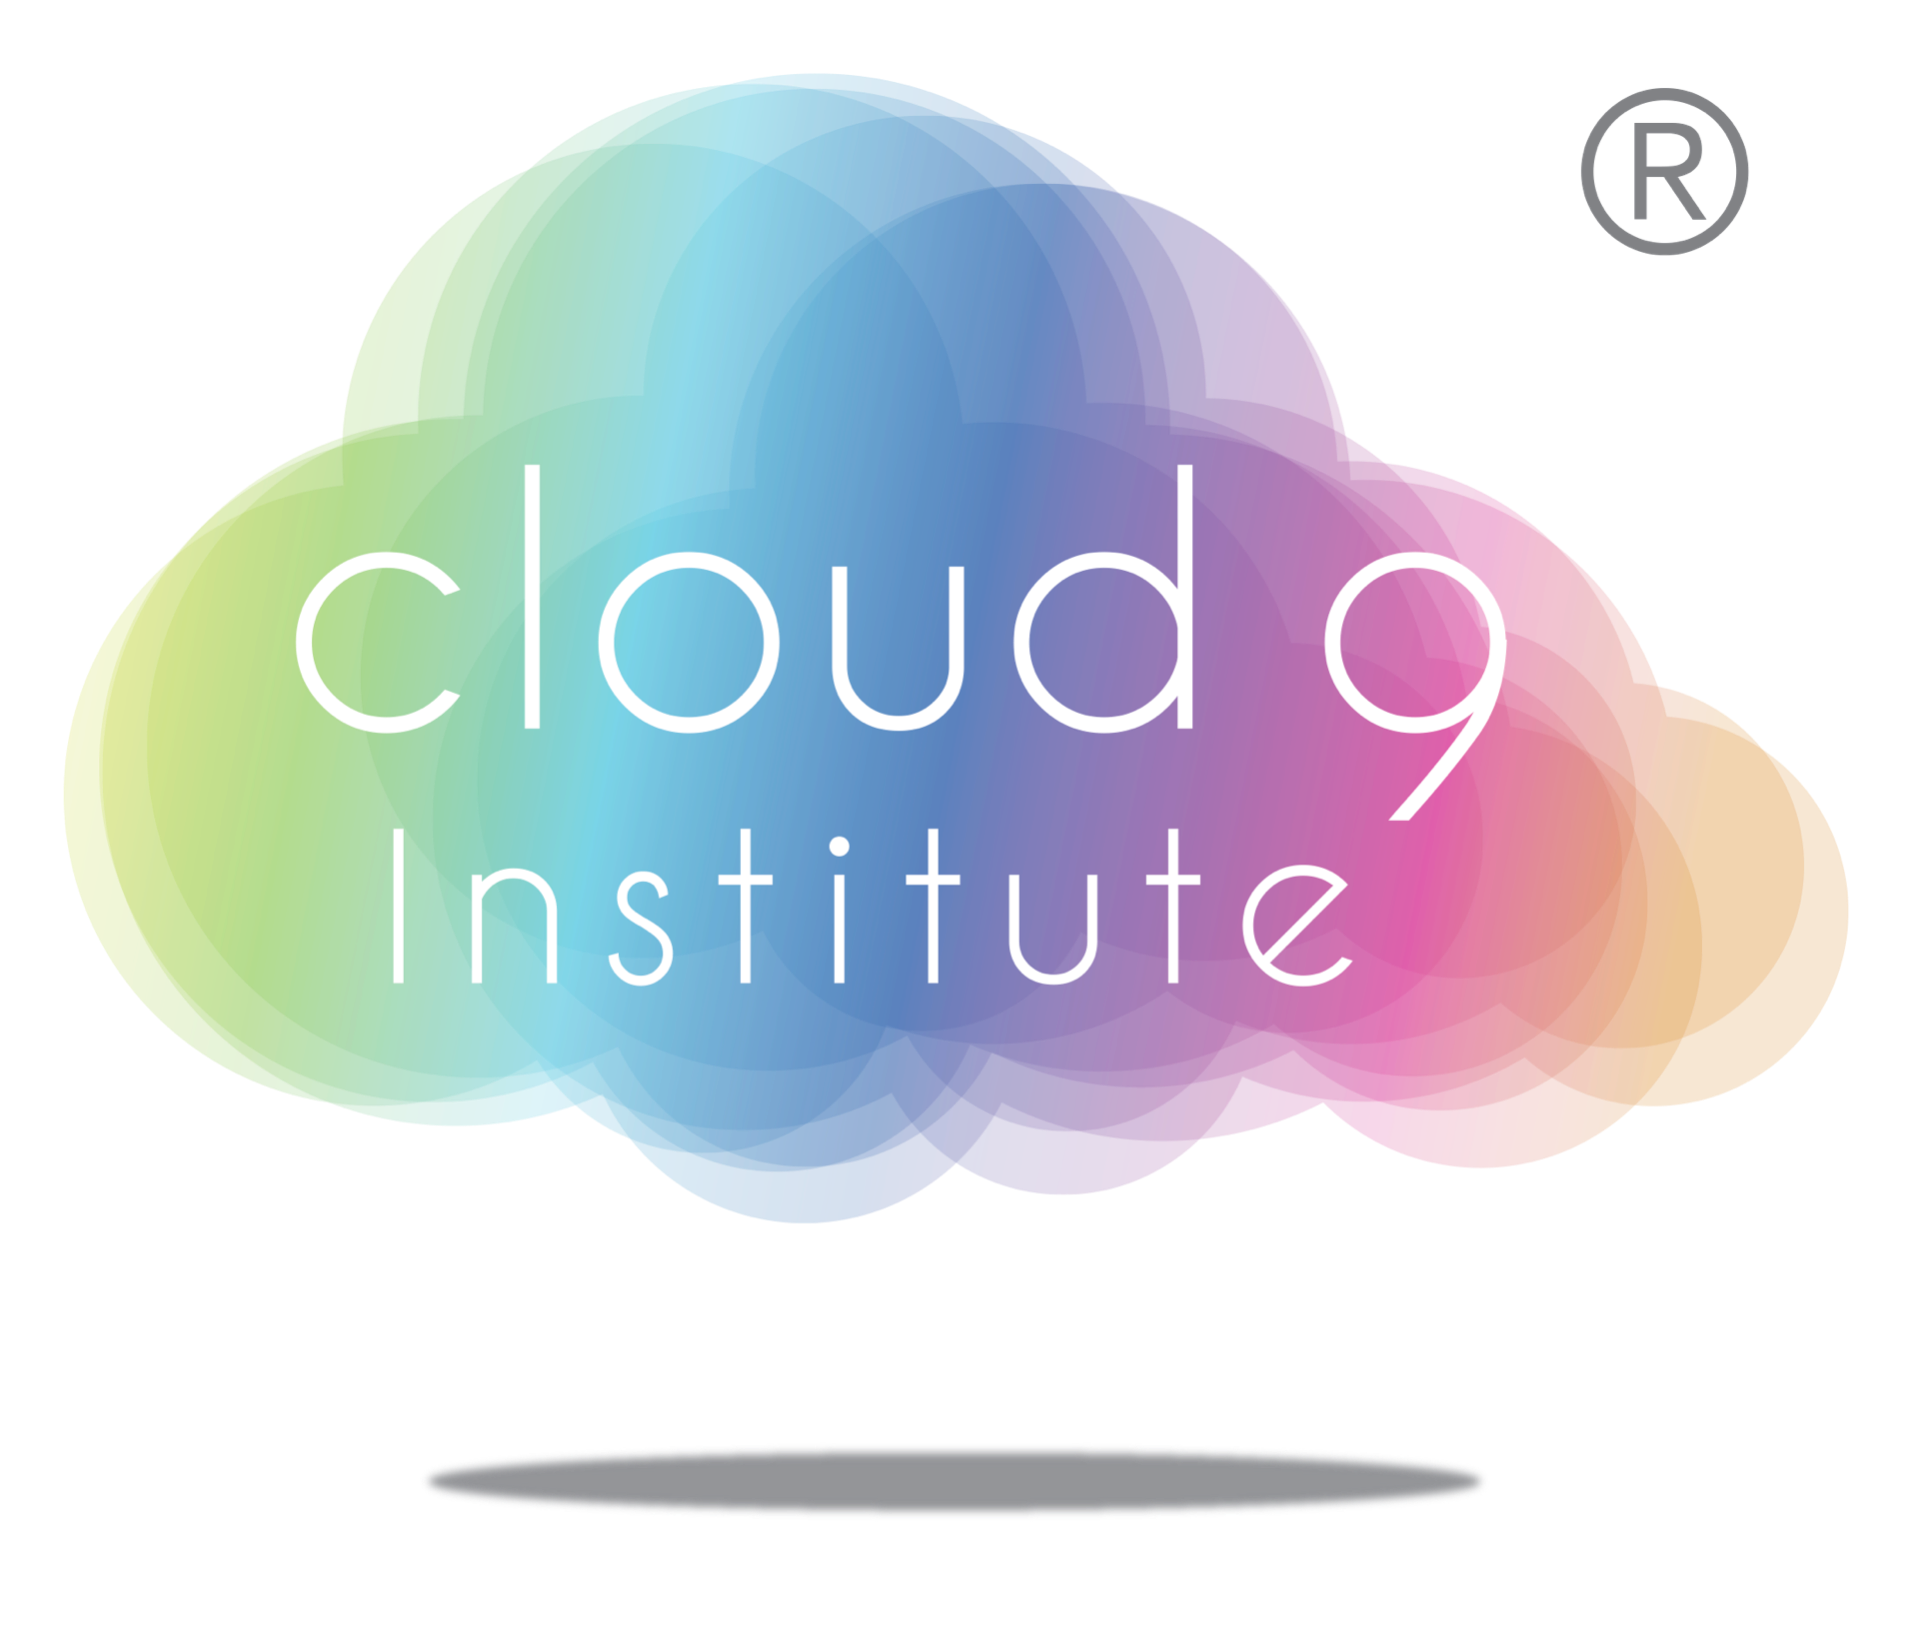 Cloud 9 Institute